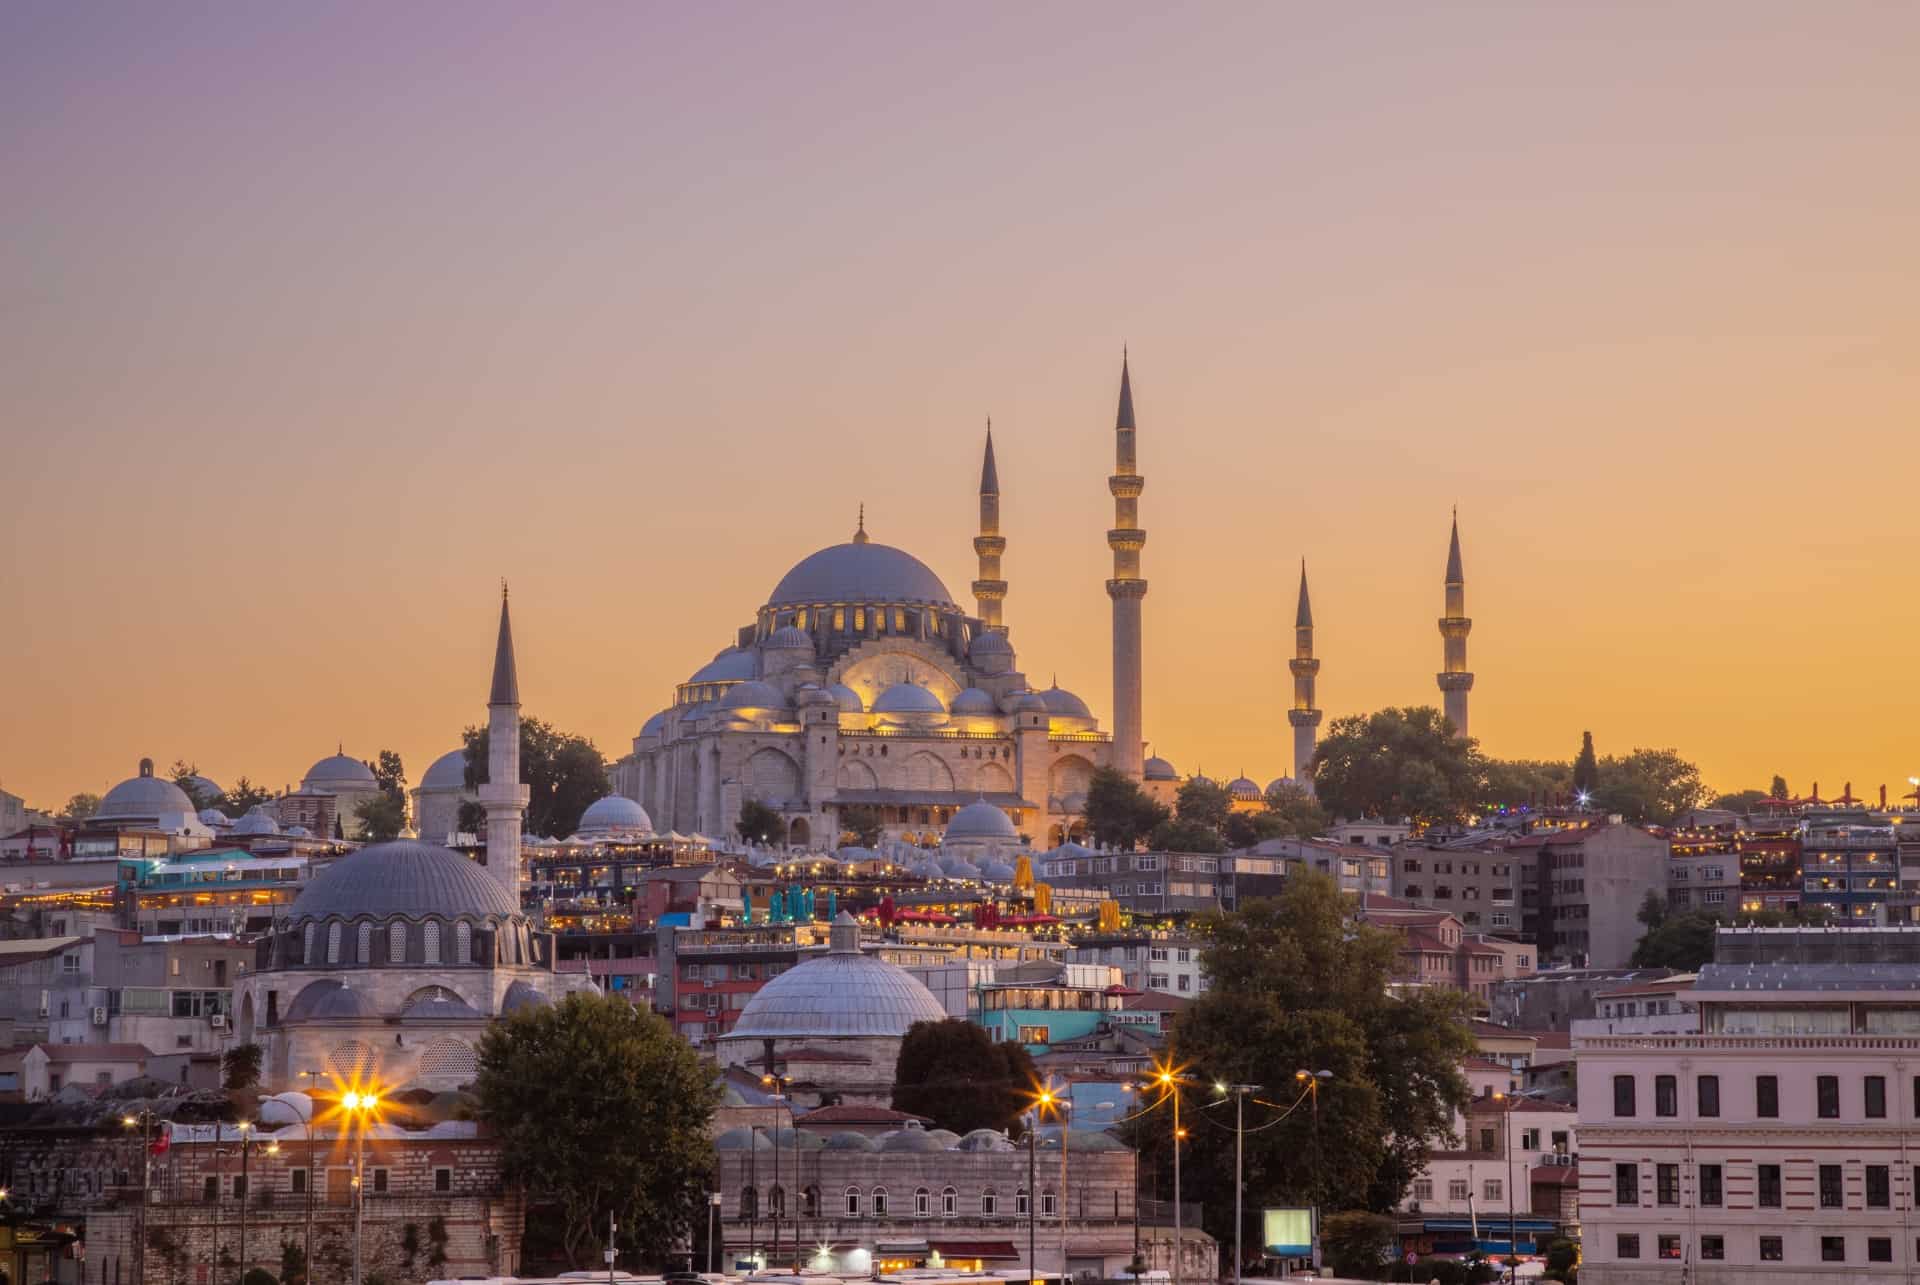 mosquee suleymaniye istanbul